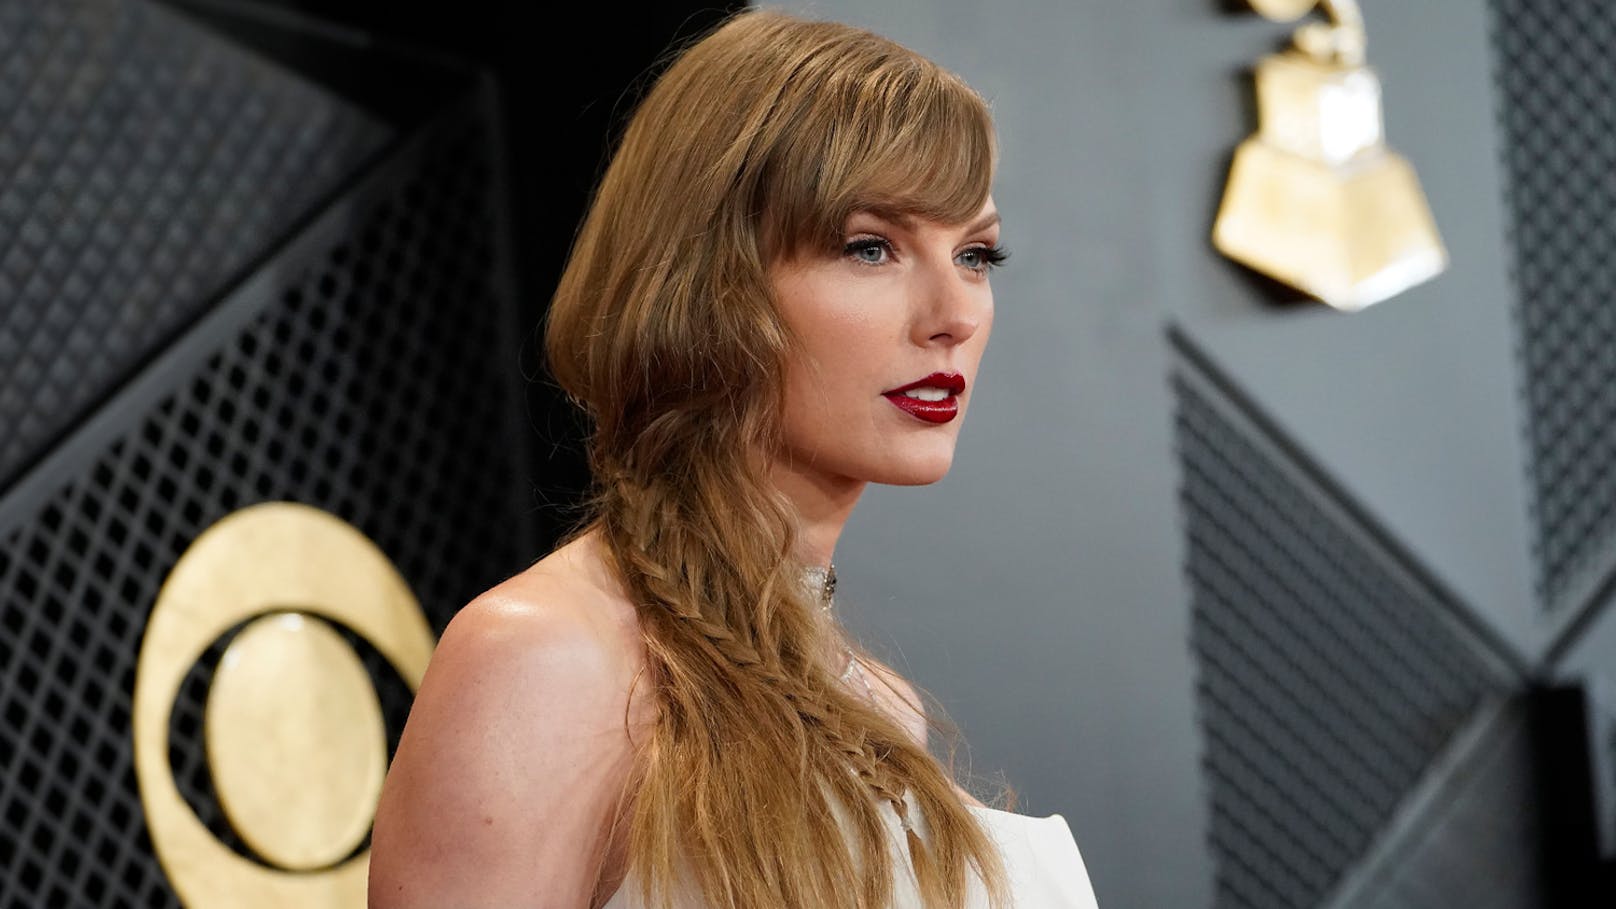 "Hirnverbrannt banal" – Kritiker verreißen Taylor Swift